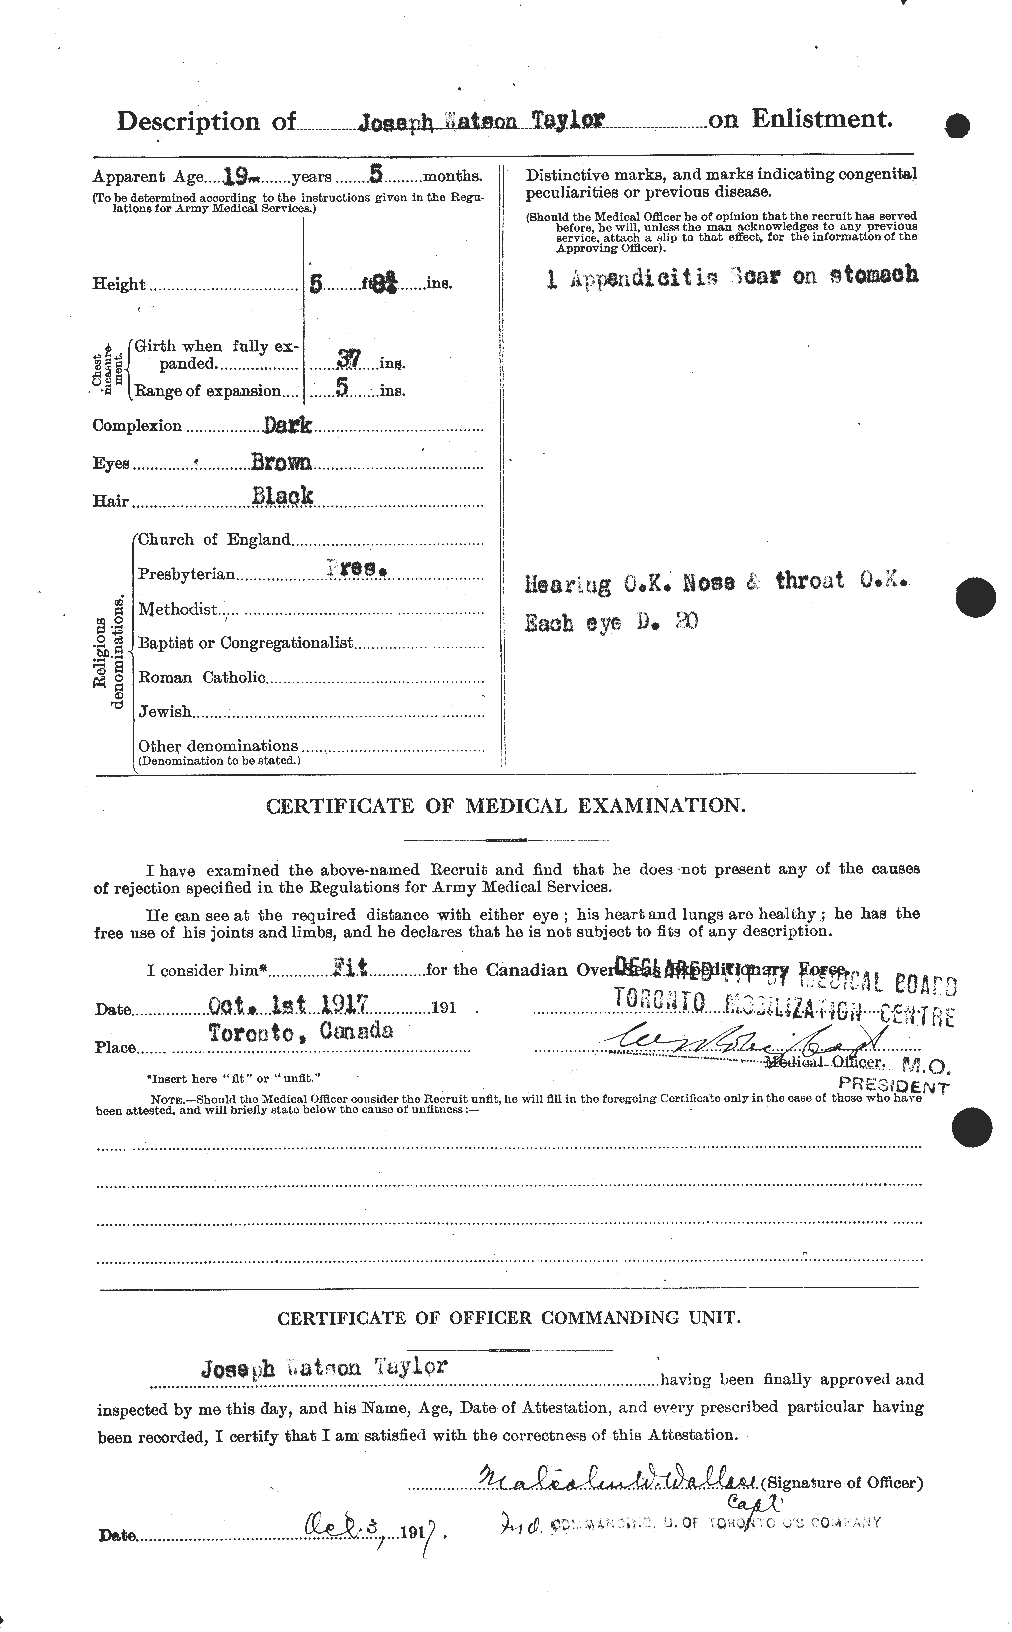 Dossiers du Personnel de la Première Guerre mondiale - CEC 627588b